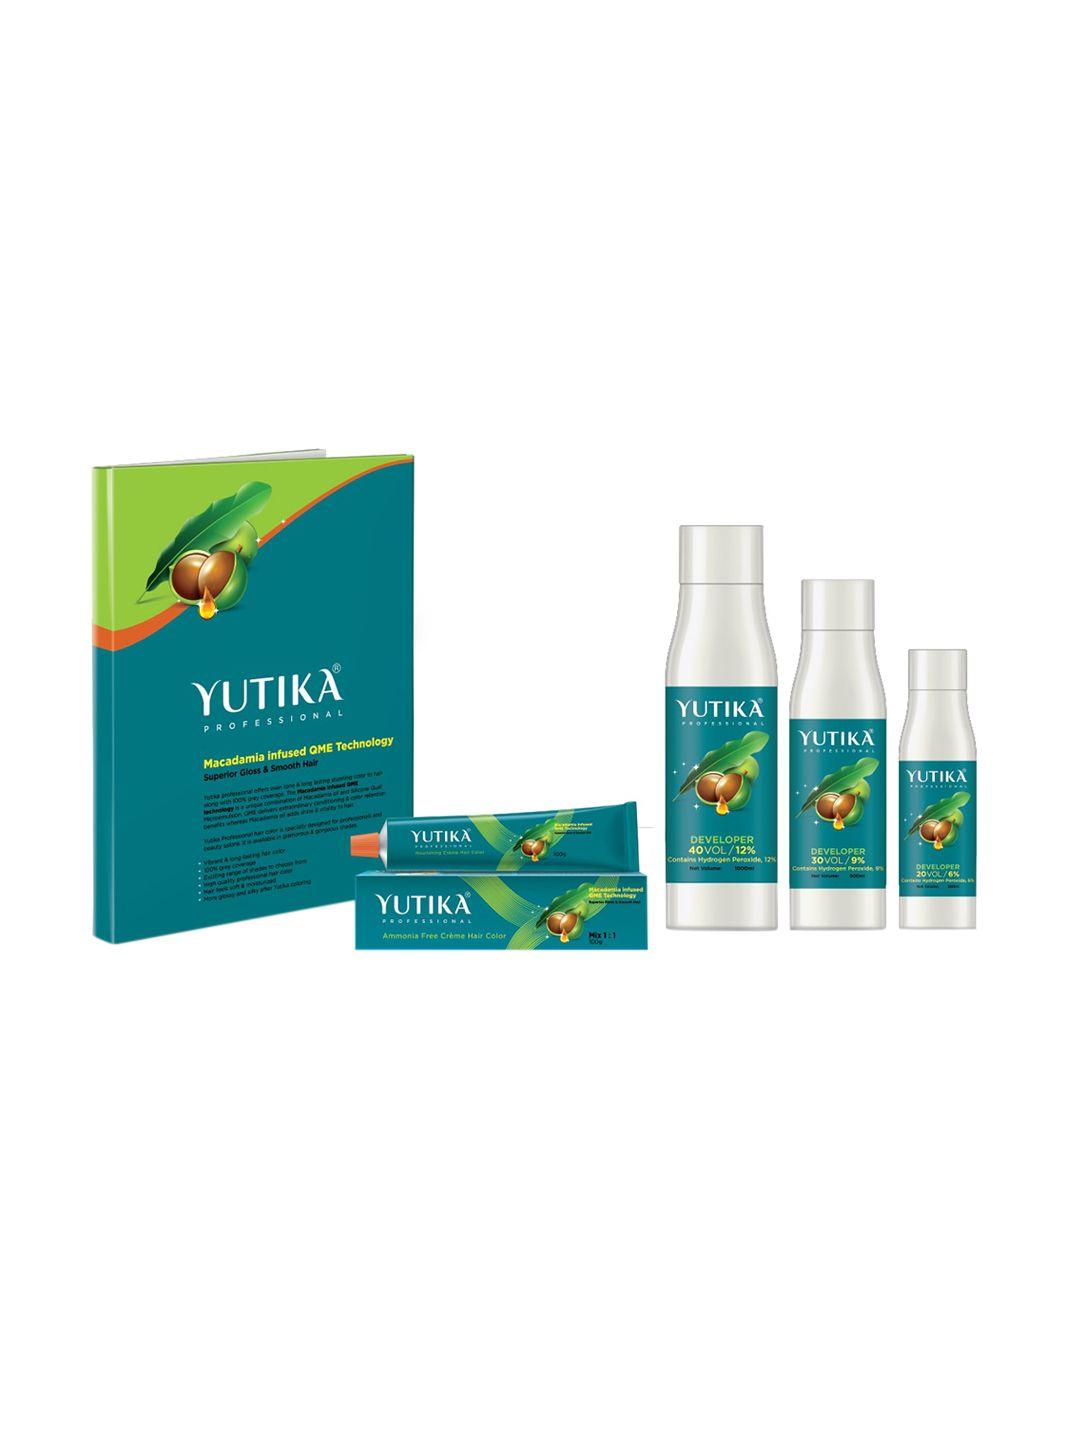 yutika professional hair developer - 40 volume 250ml